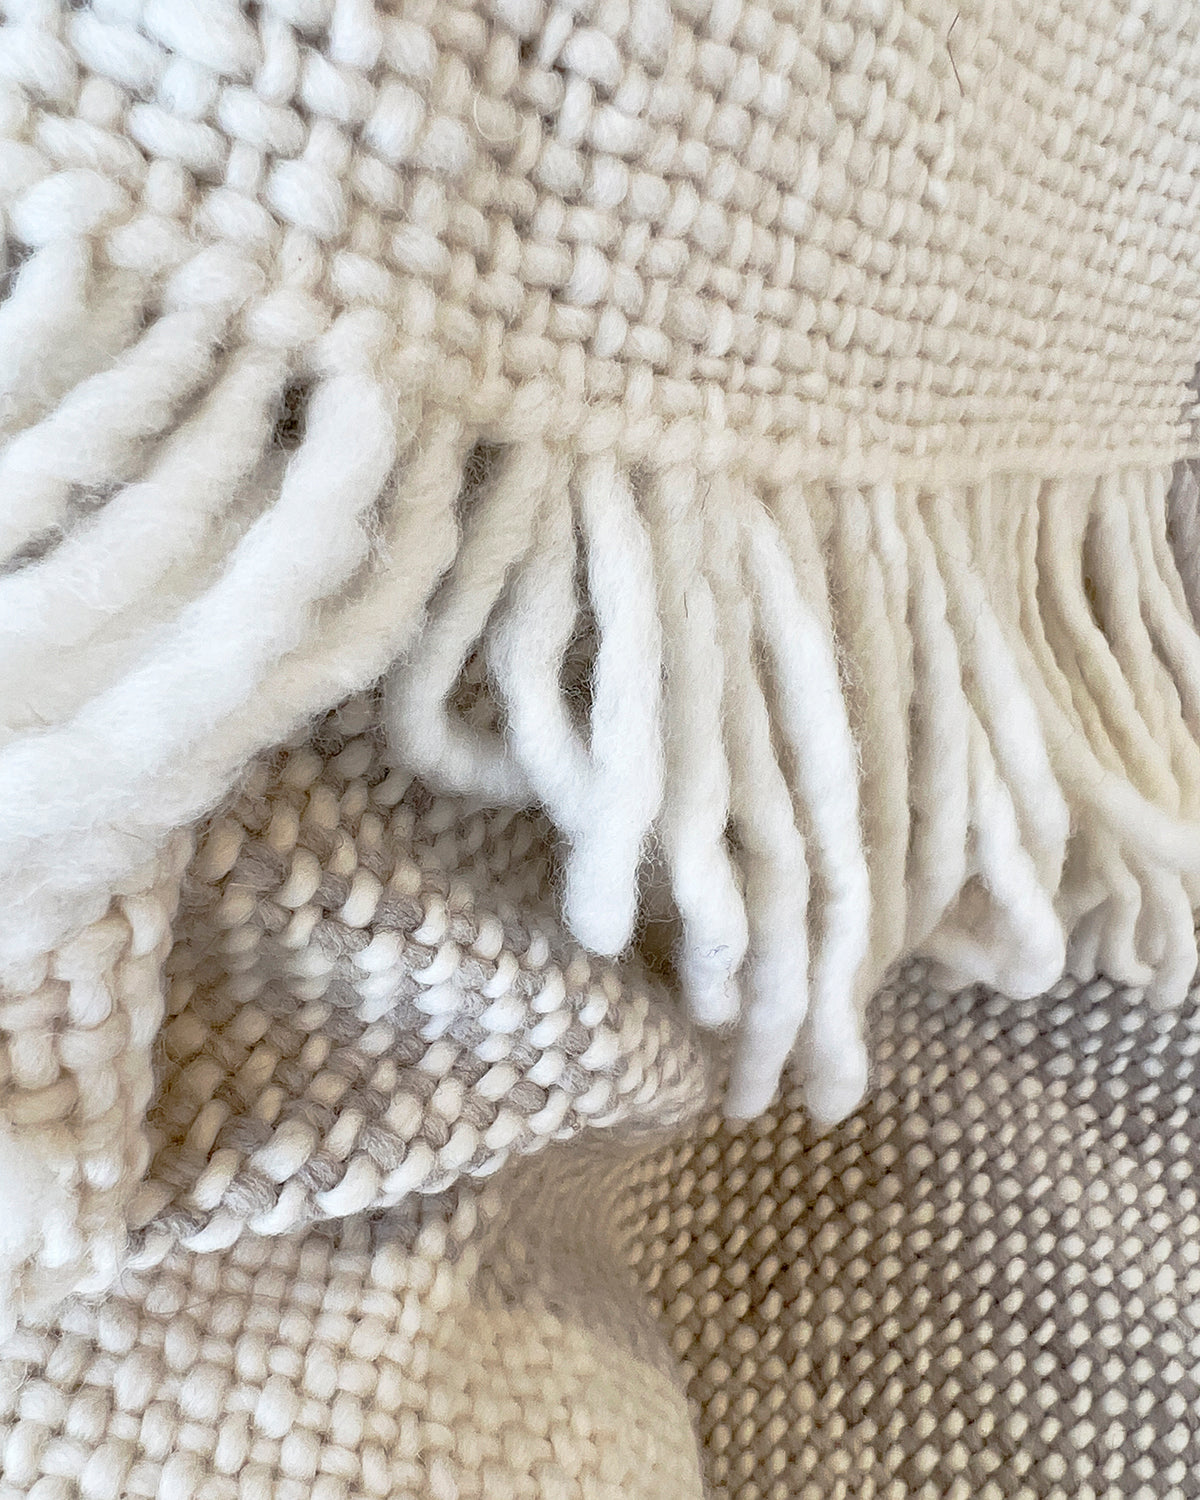 Estancia Handmade Merino Wool Throw Shawl